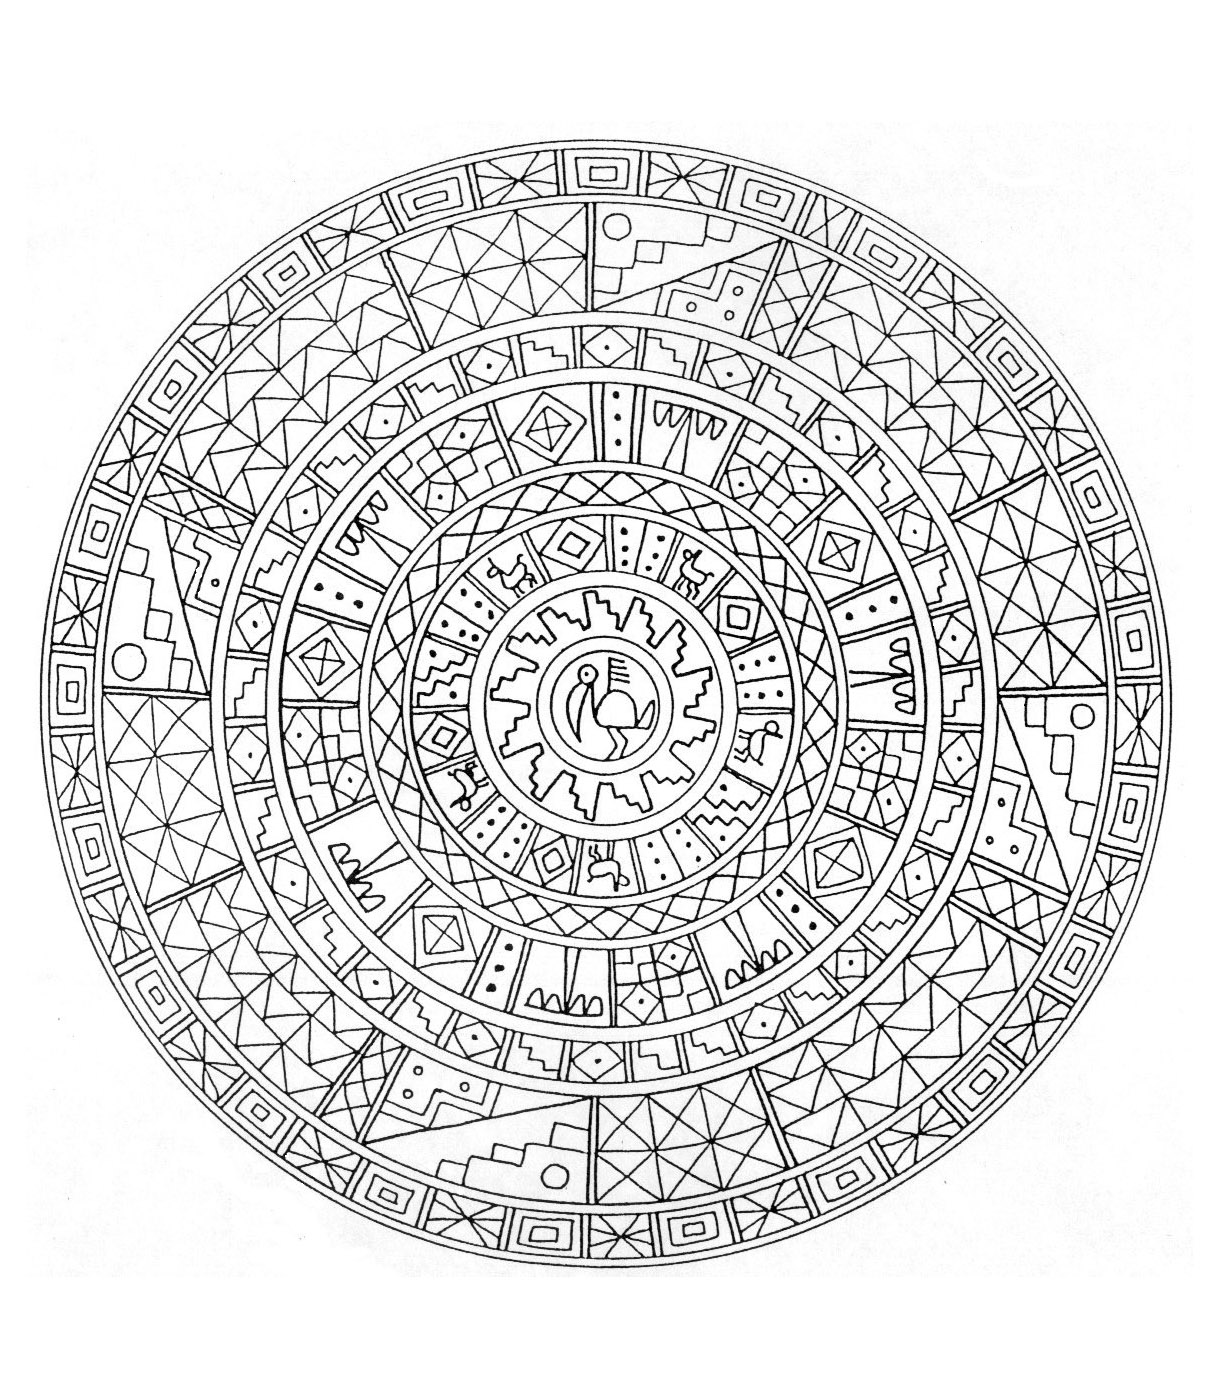 Straordinario mandala con diverse forme geometriche rappresentate da quadrati, losanghe e un grazioso fiore al centro. Mandala ricco di dettagli.